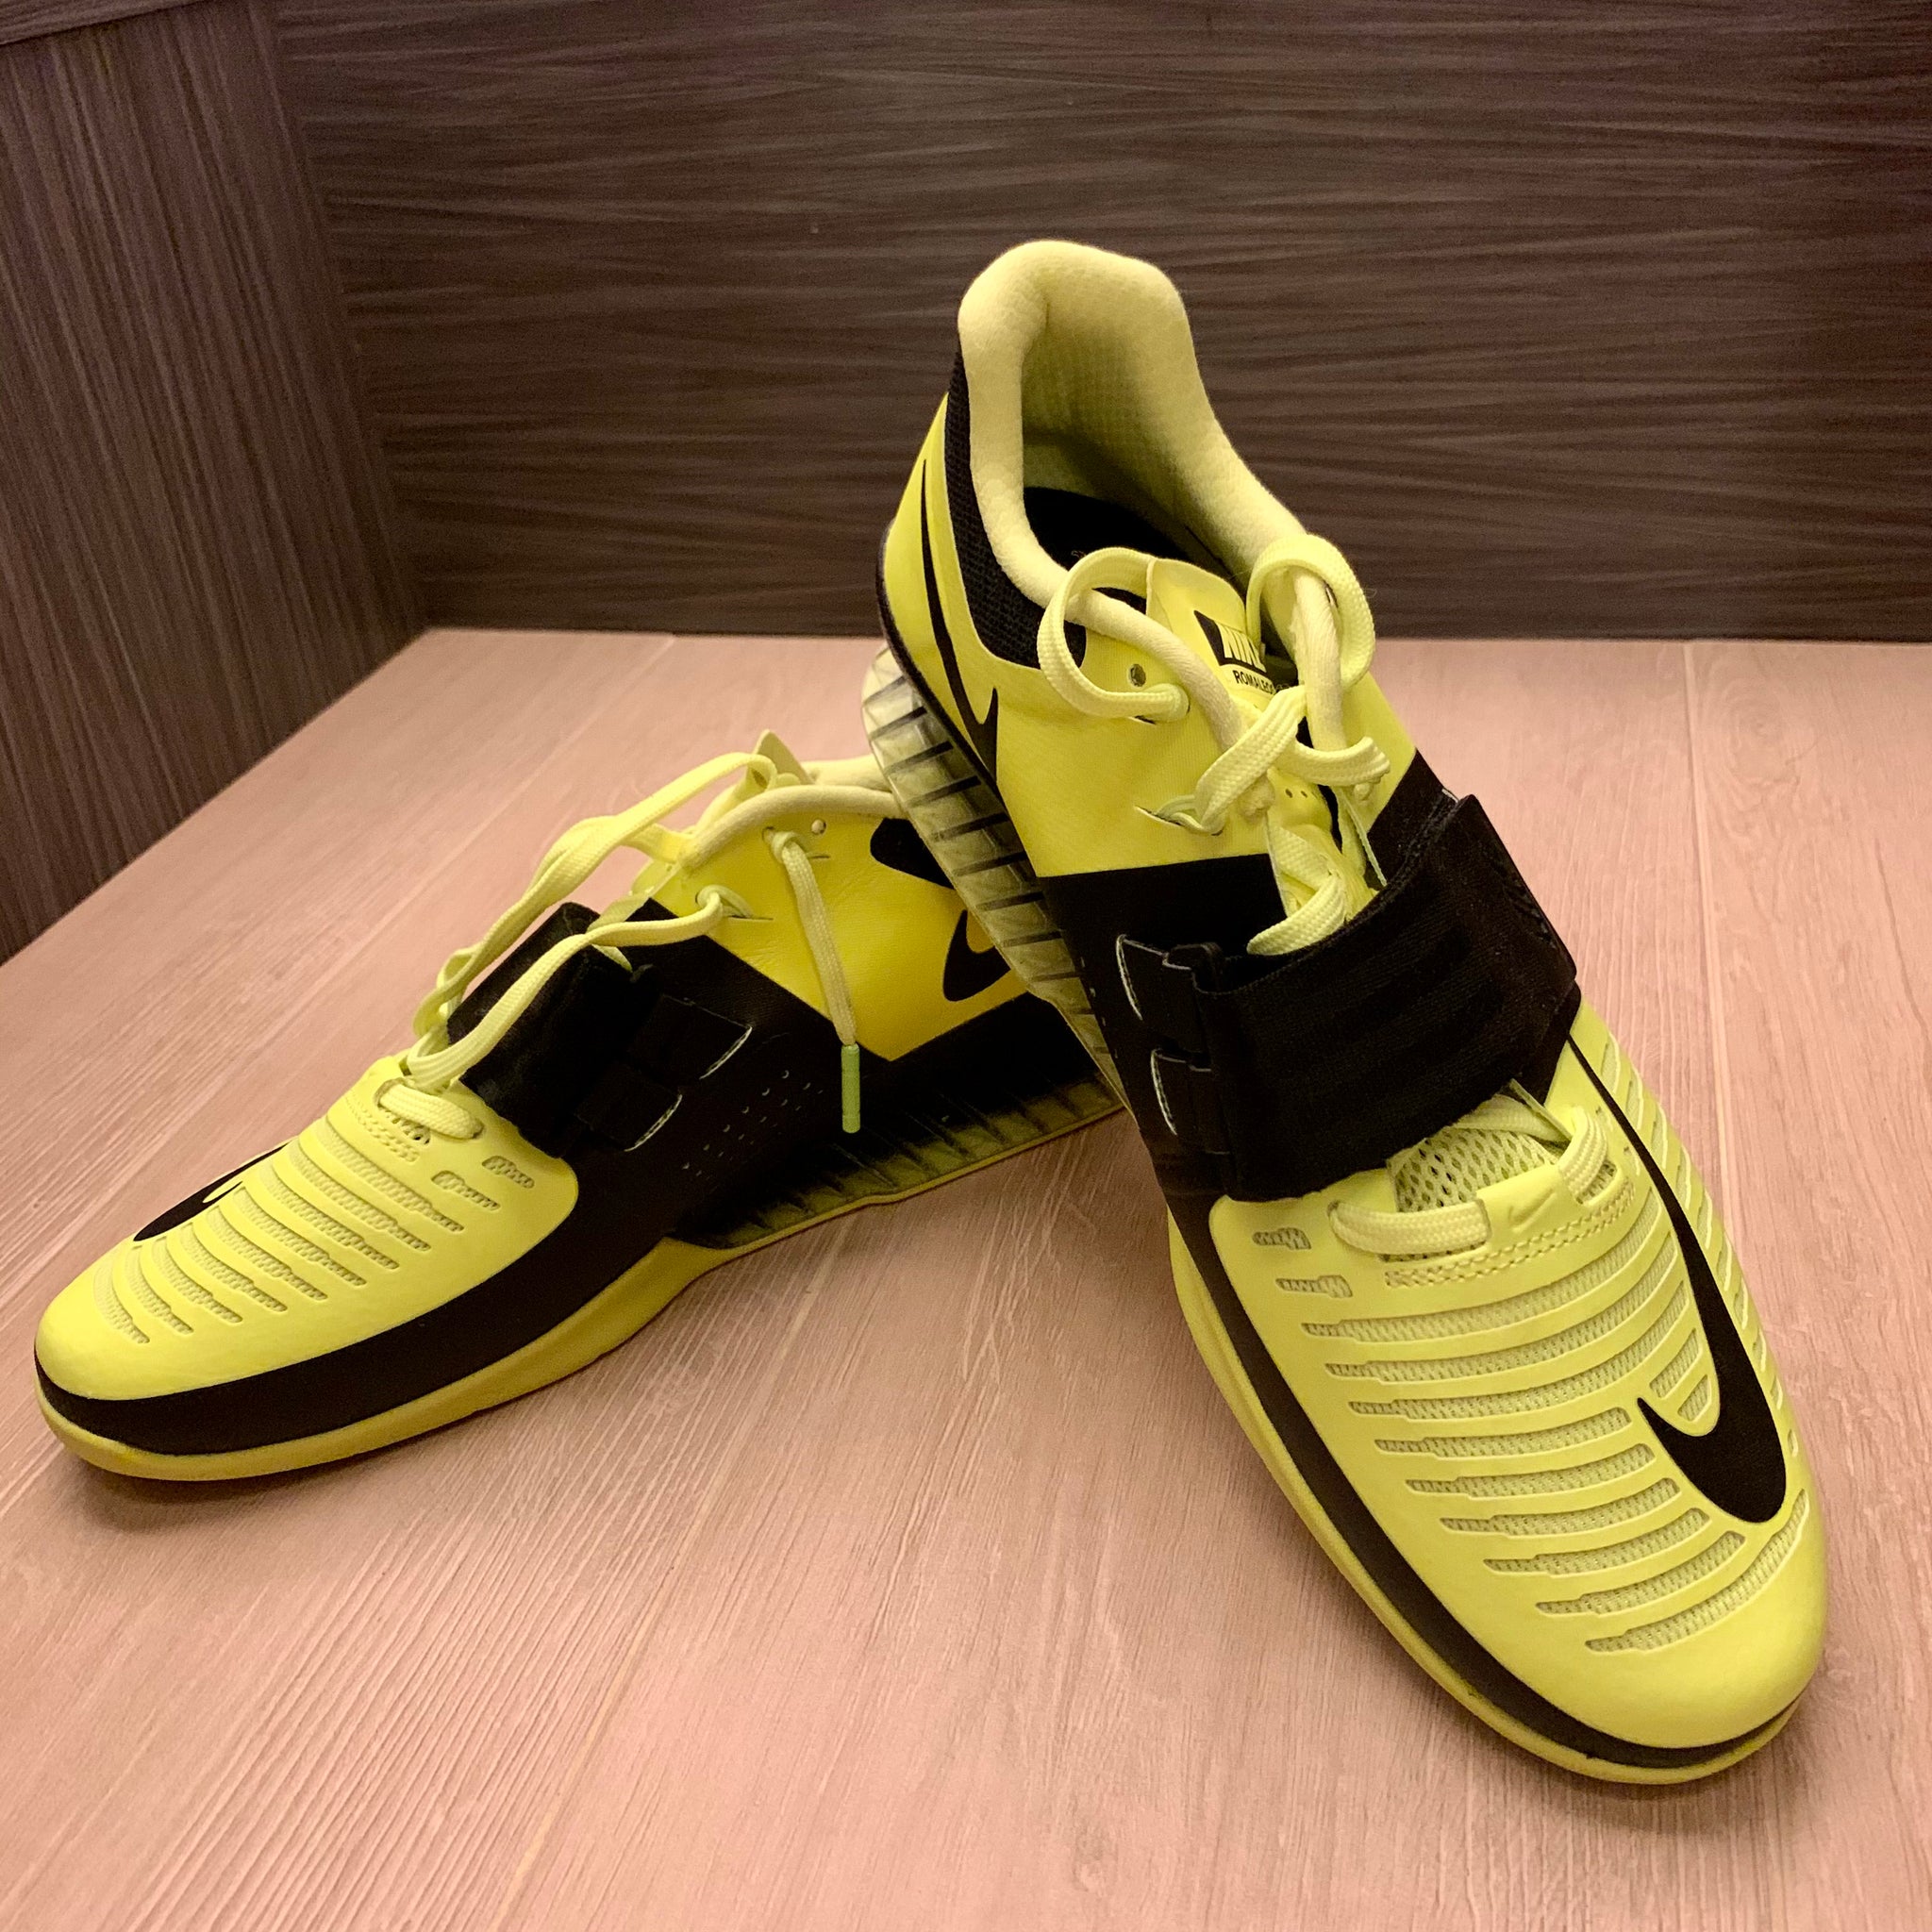 Nike Romaleos 3 Volt (New box) – Hong Kong Weightlifters